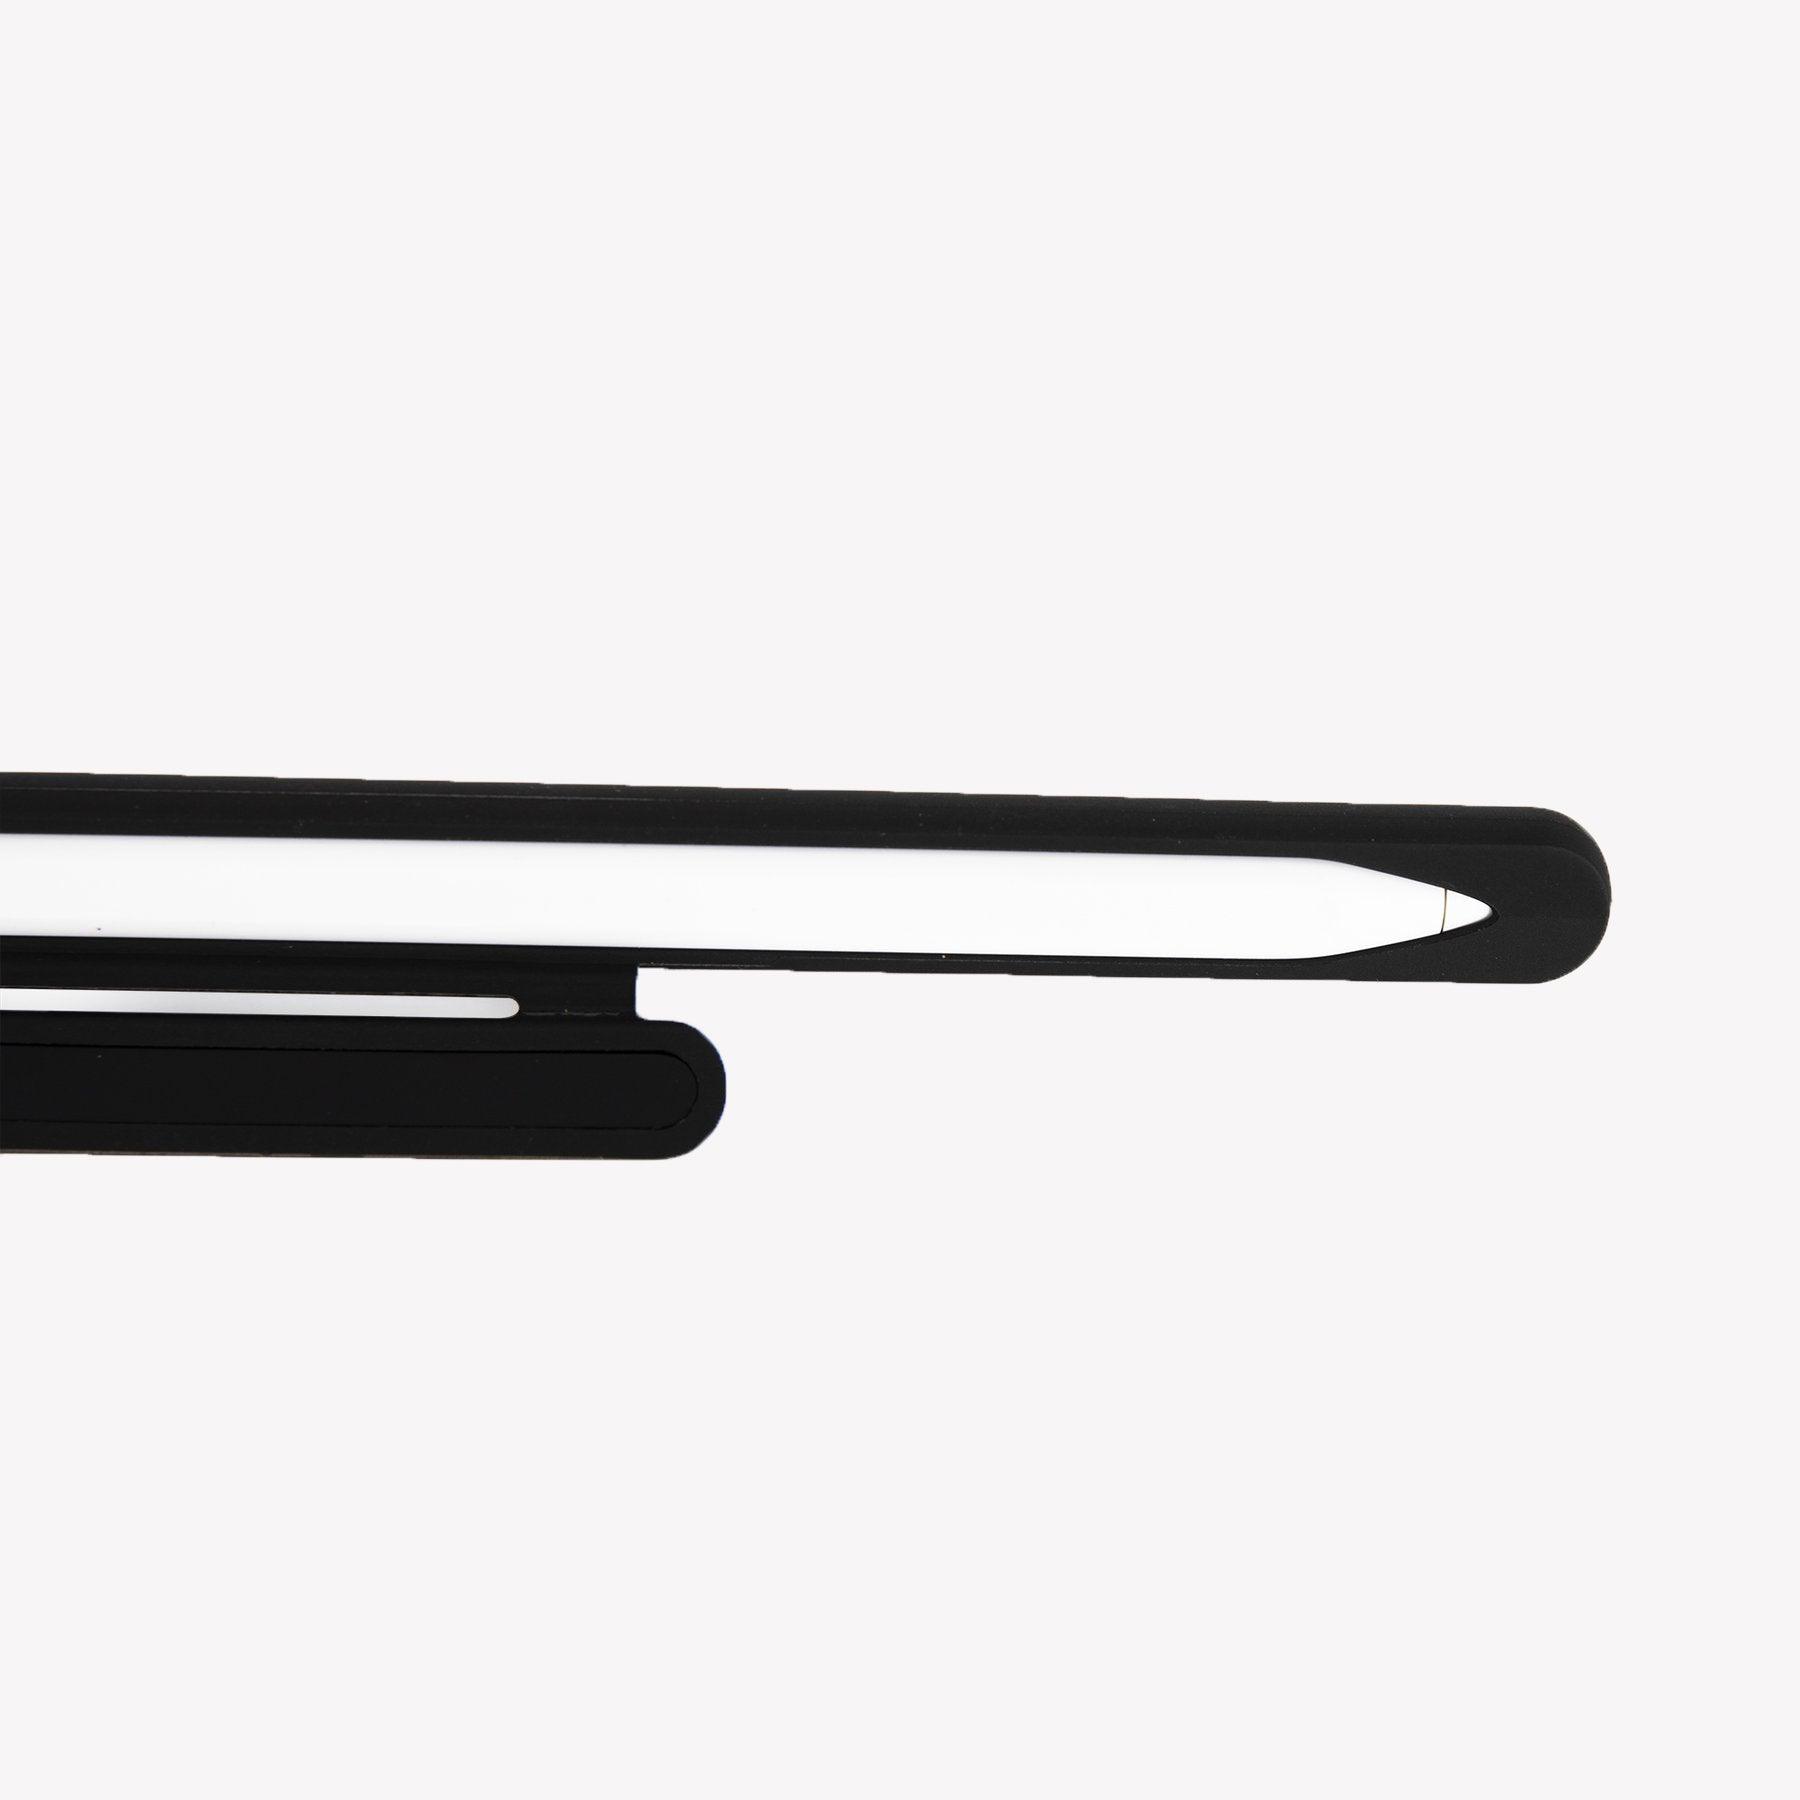 Apple Pen Case - Grab Your Gadget